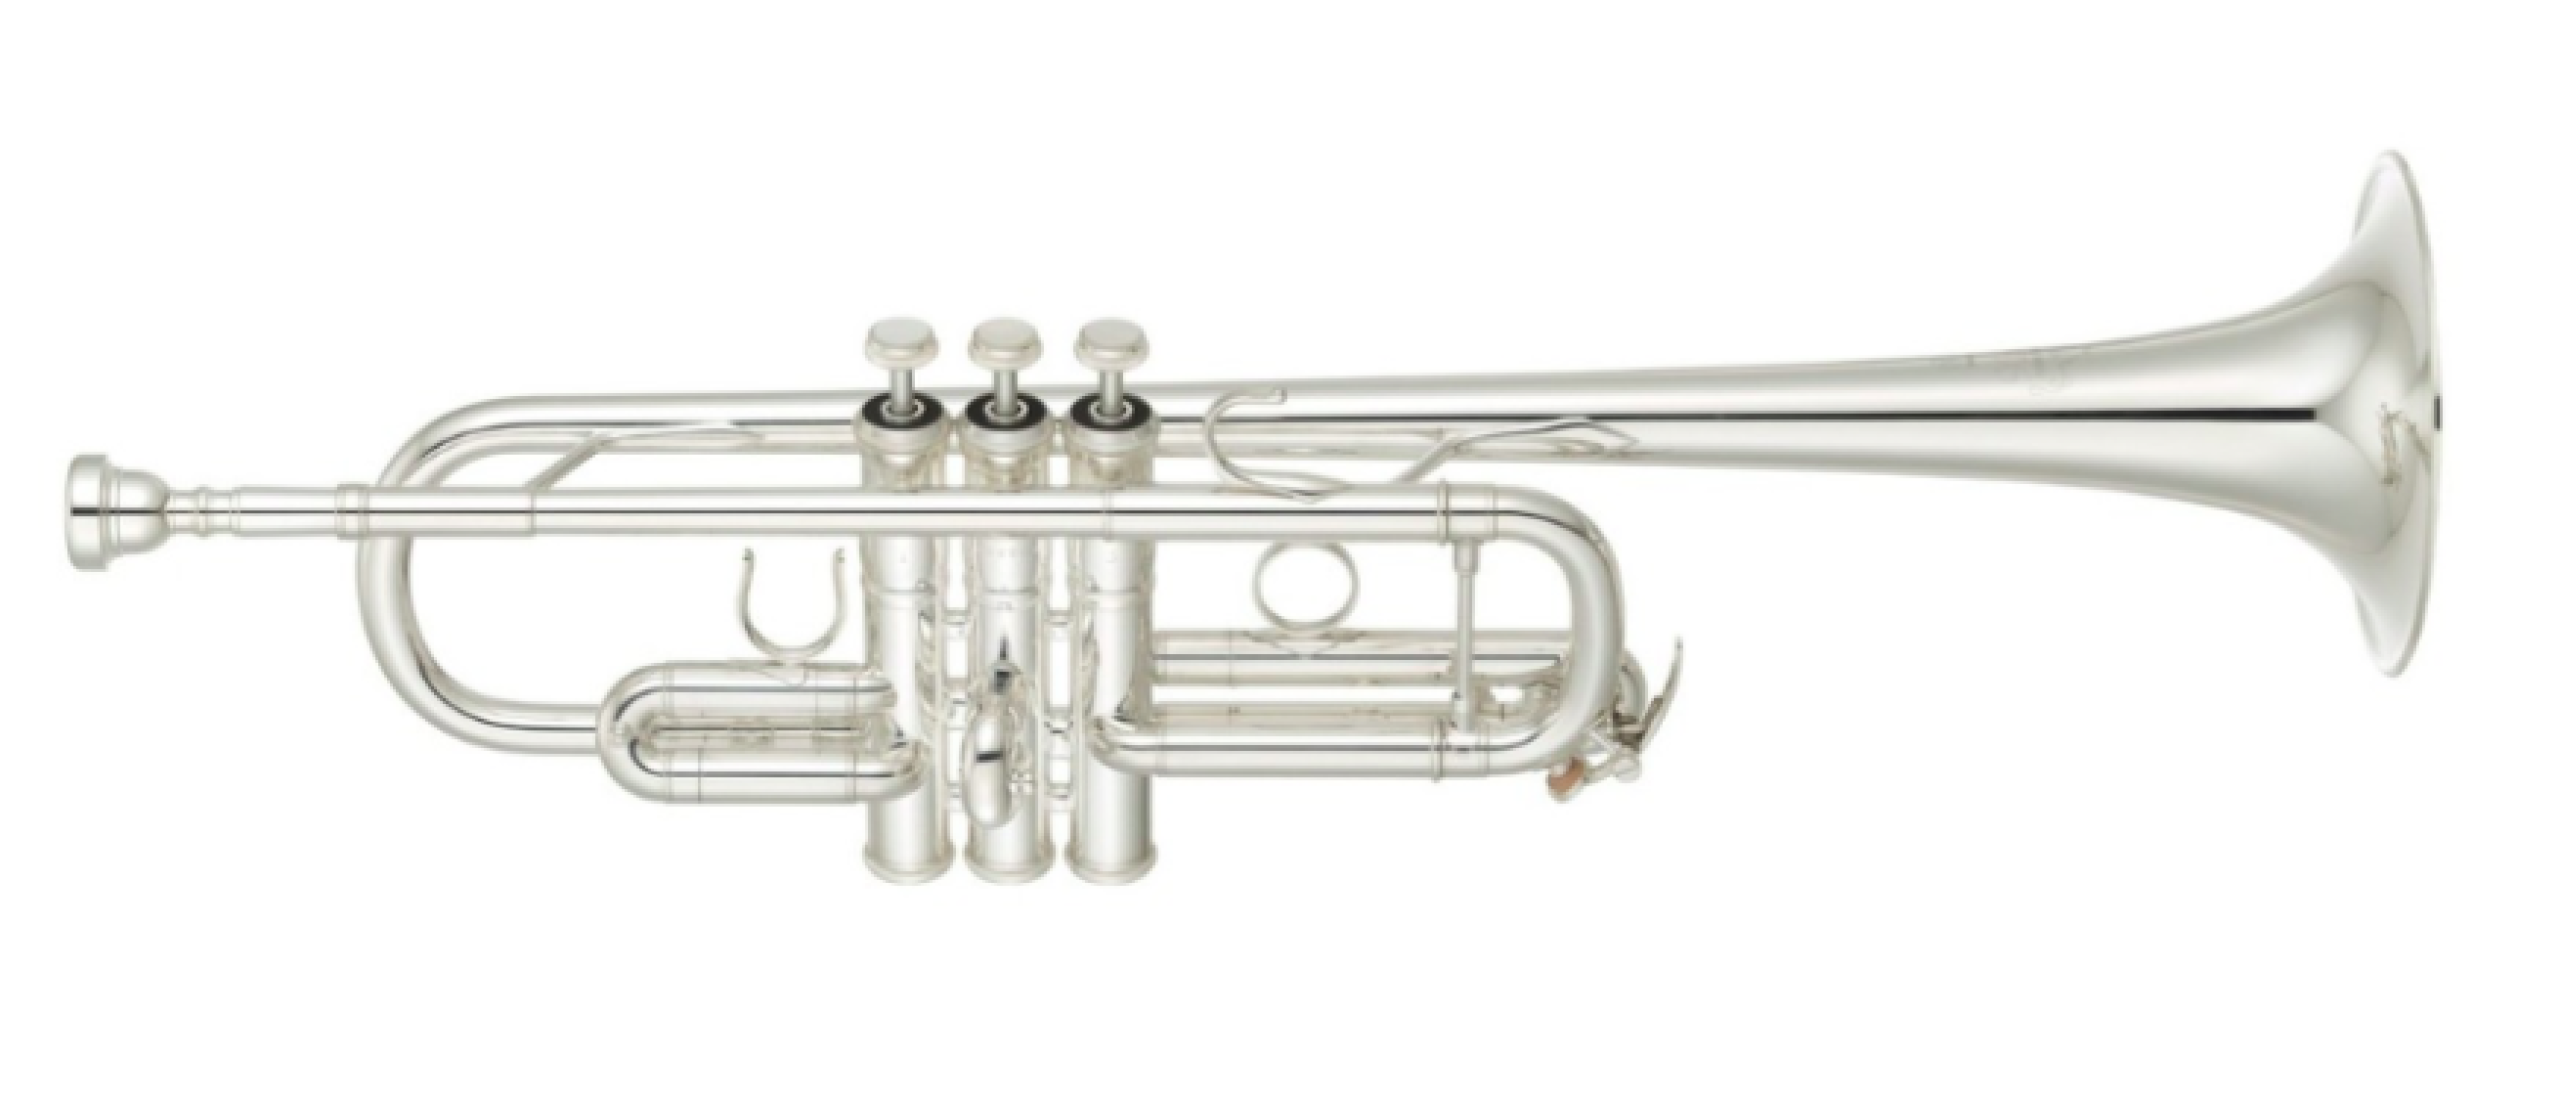 c-trumpet-pic